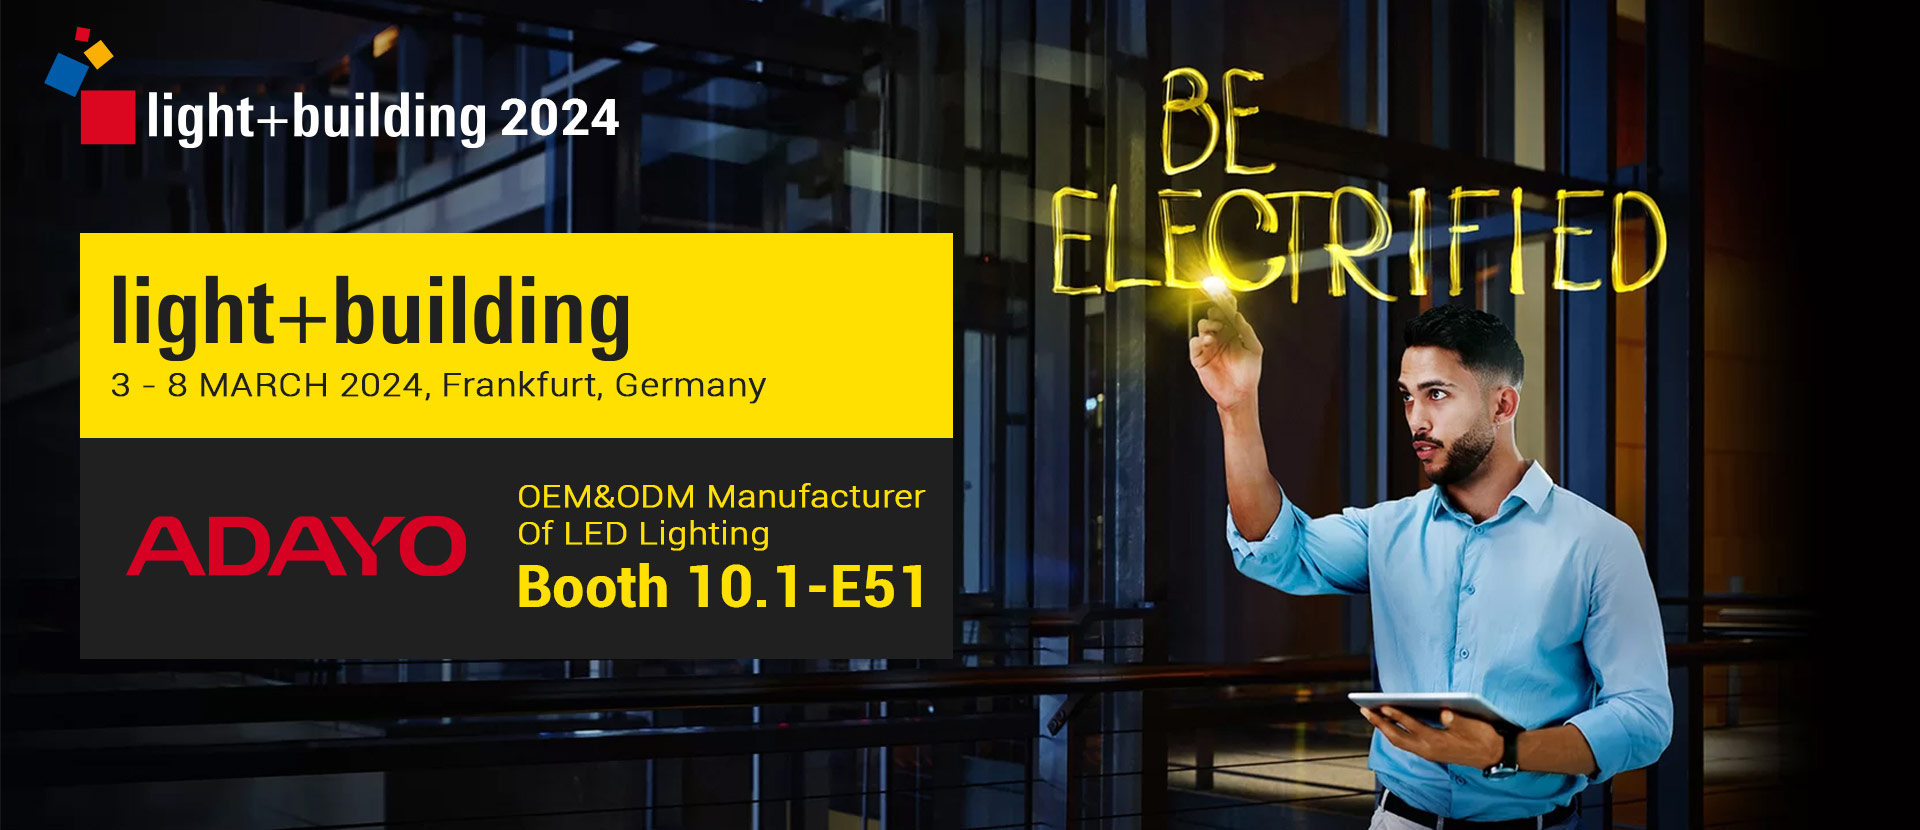 LED lighting manufacturer Ligting+Building 2024